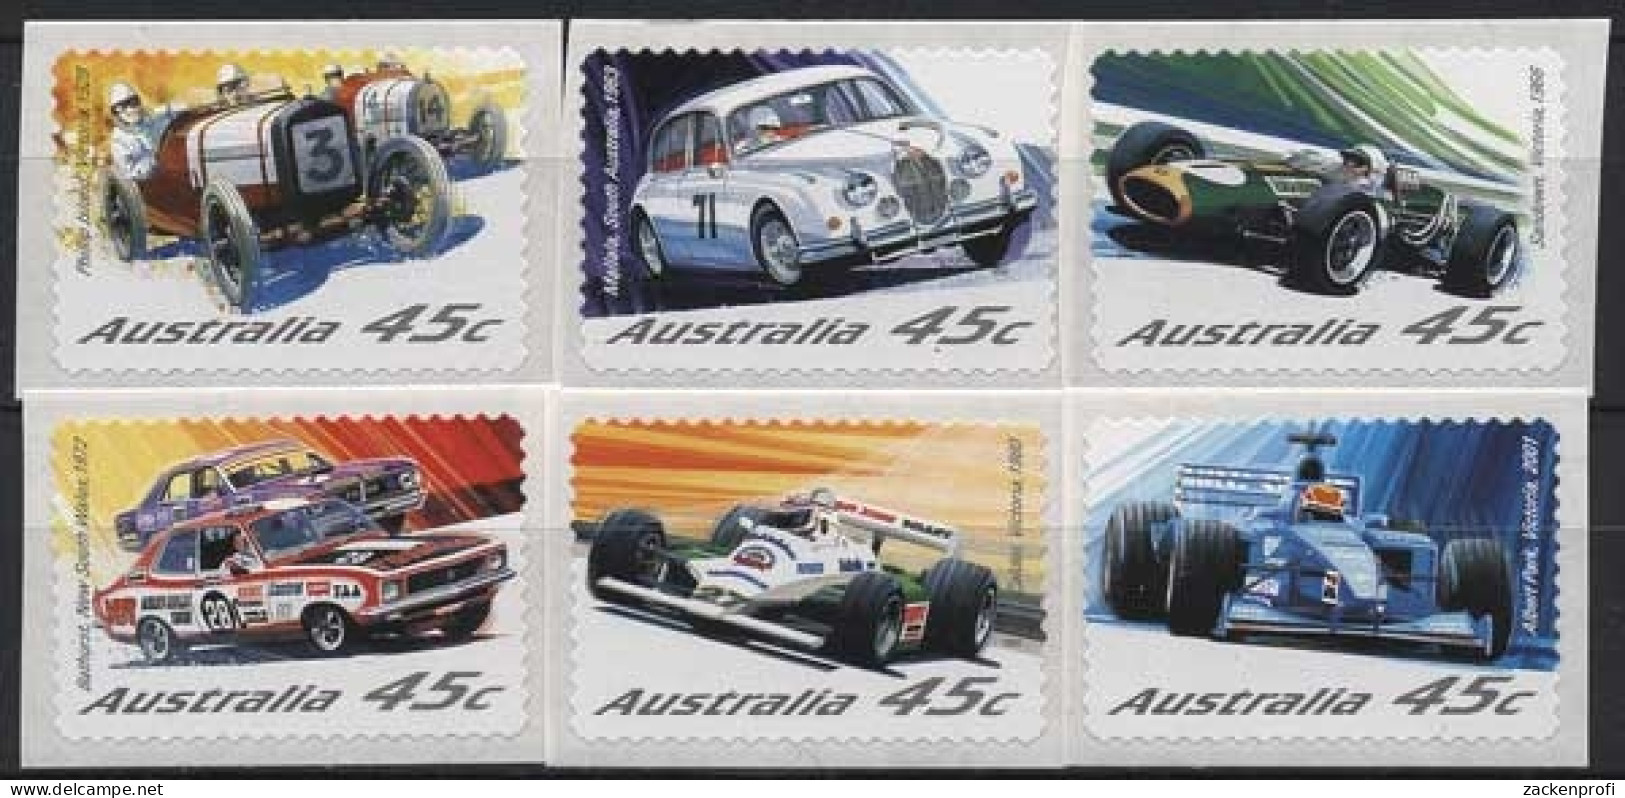 Australien 2002 Automobilrennsport 2119/24 Postfrisch - Neufs